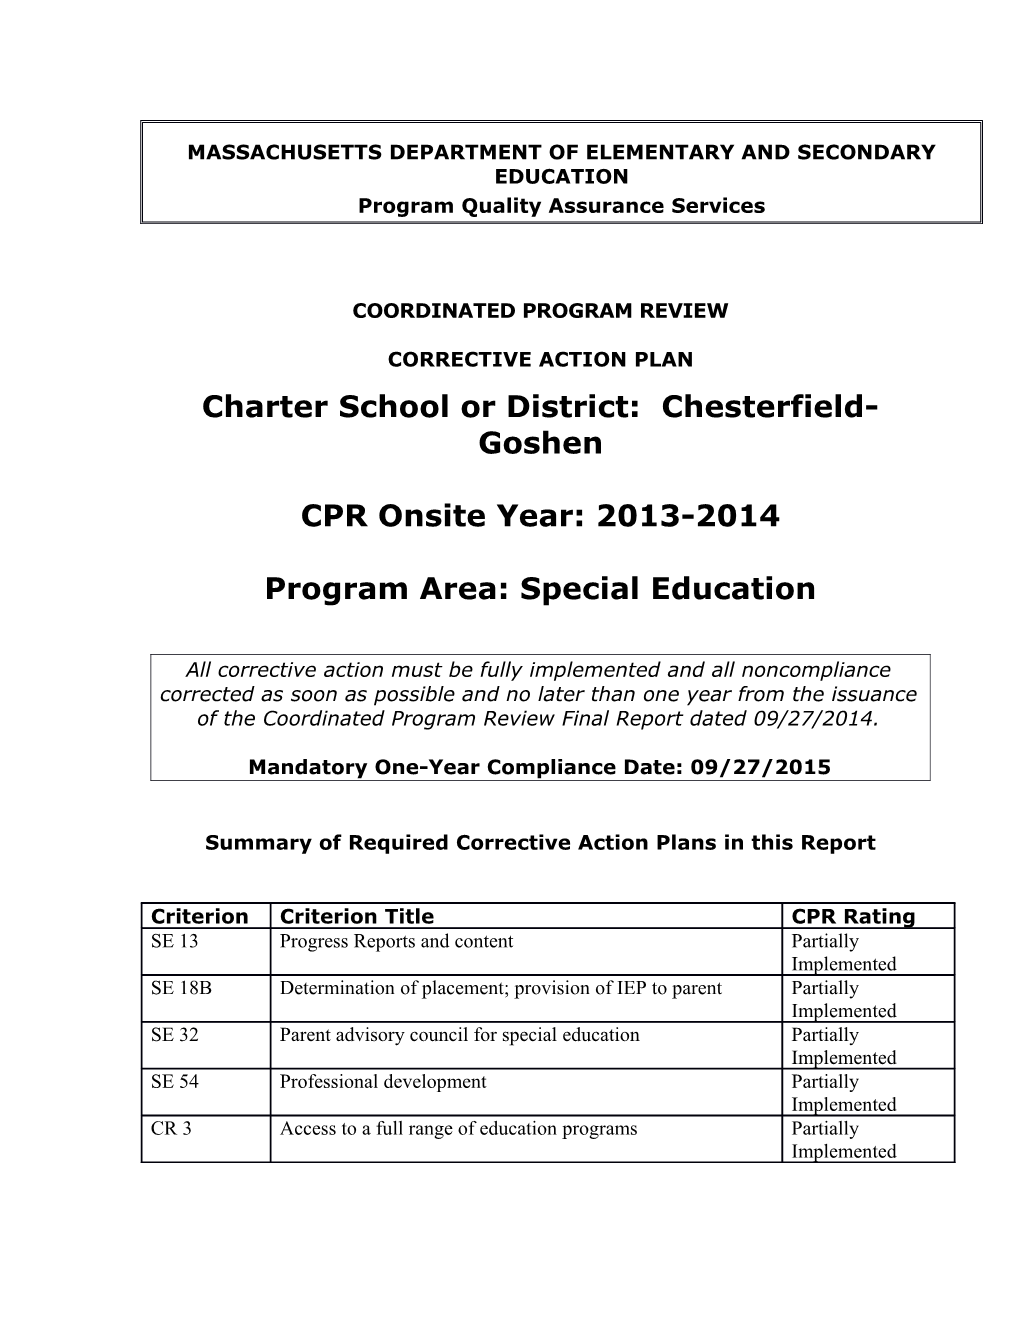 Chesterfield-Goshen Public Schools CAP 2014